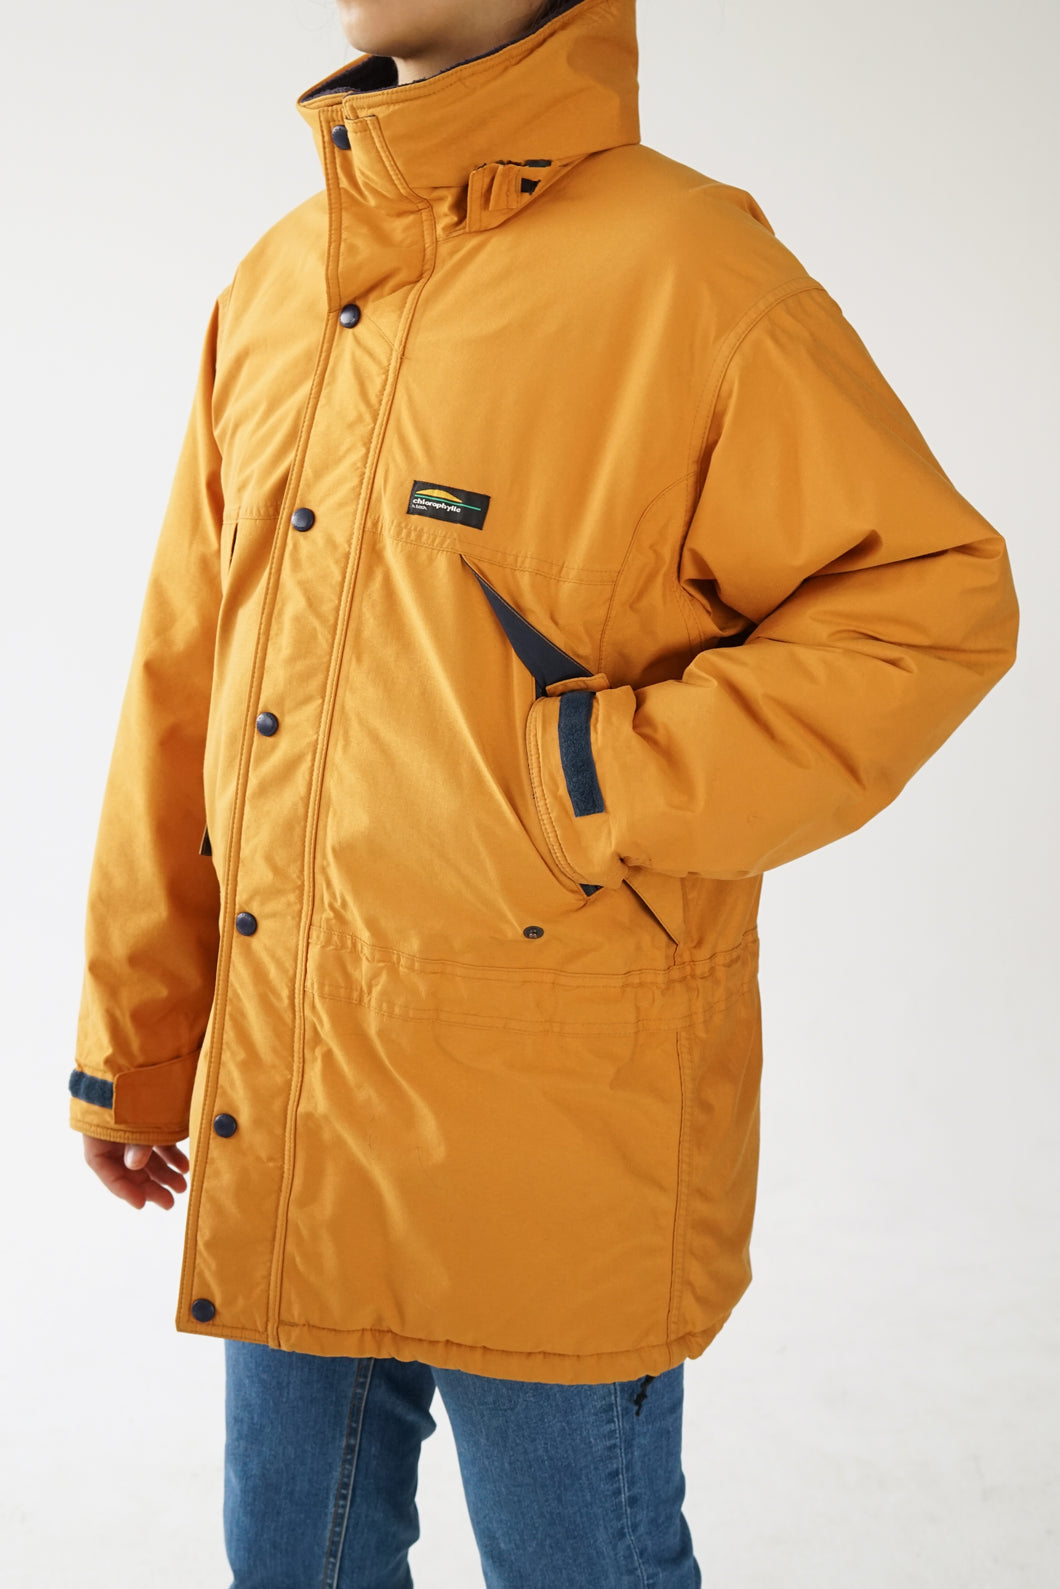 Manteau d'hiver expédition en Gore-Tex Chlorophylle orange brûlé unisex taille M-L